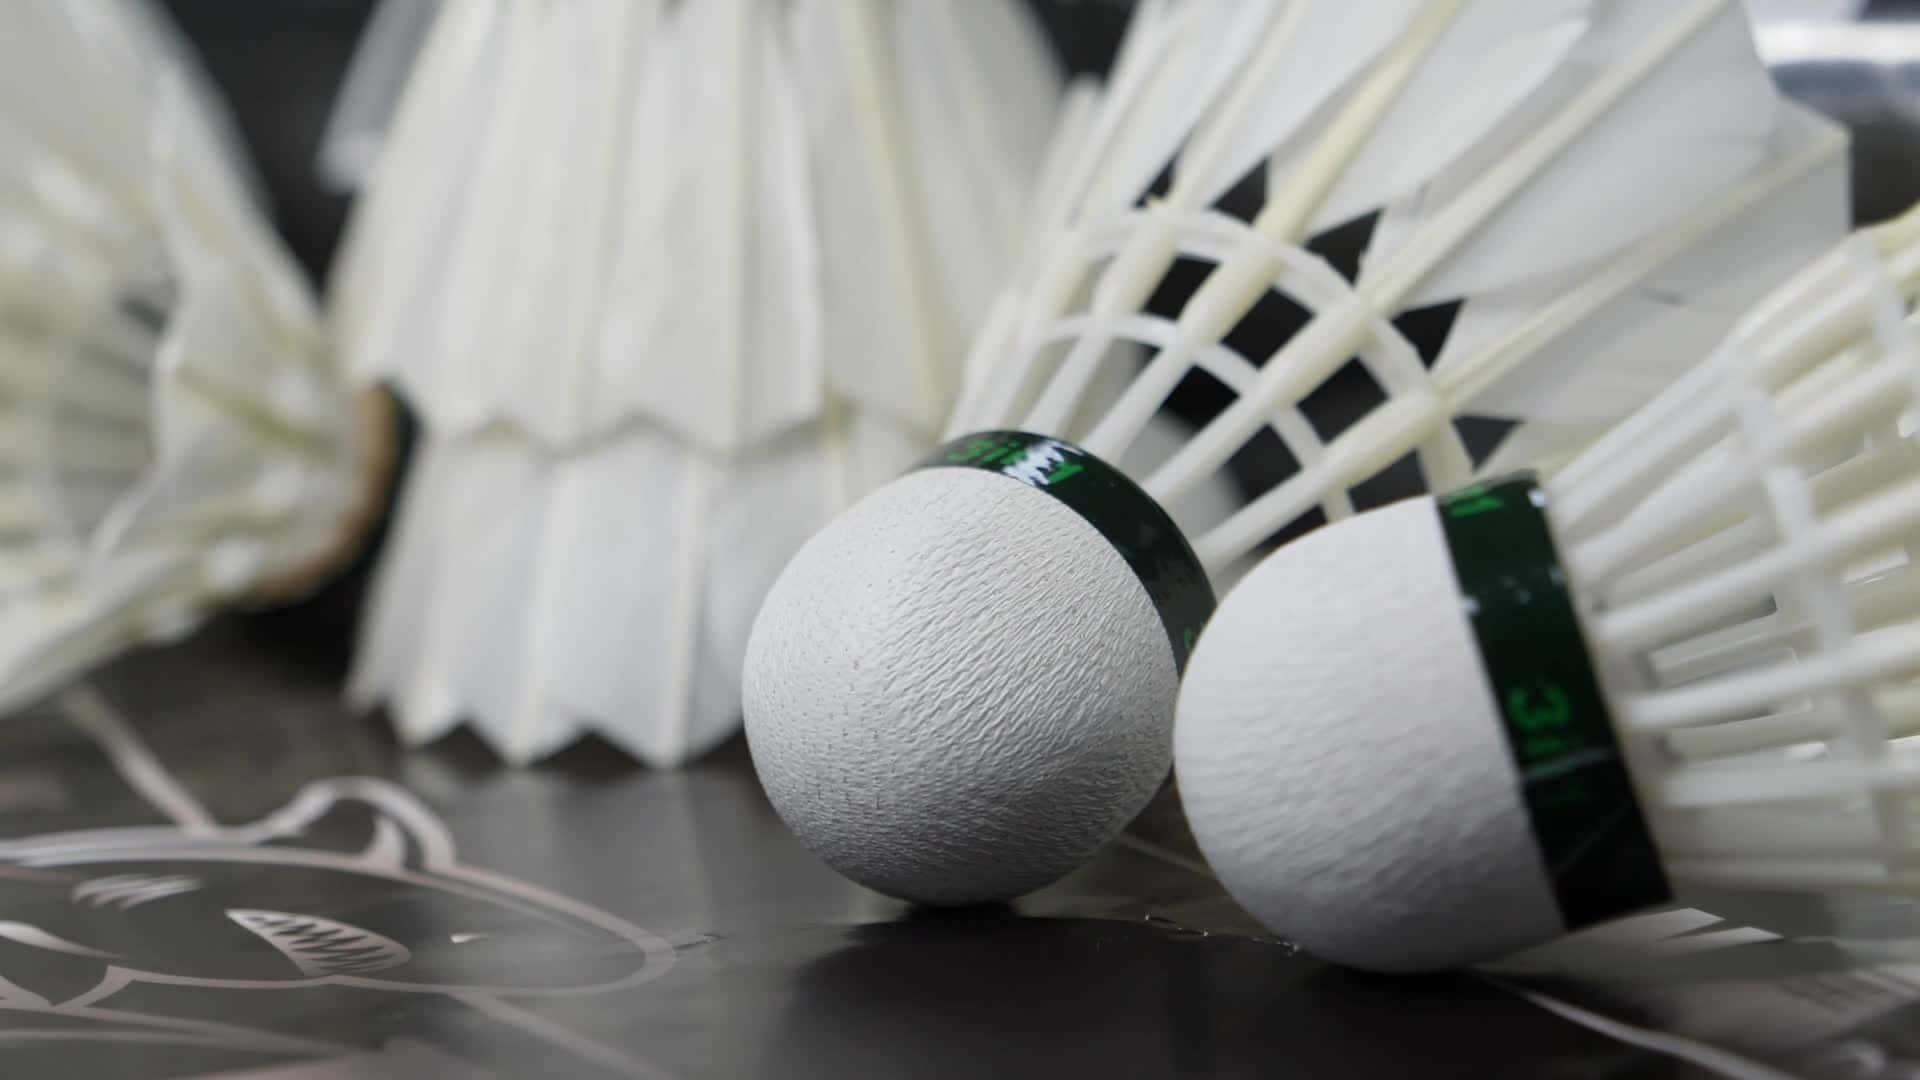 Duegiocatori Dimostrano Le Loro Abilità Nel Badminton In Una Partita Sportiva.